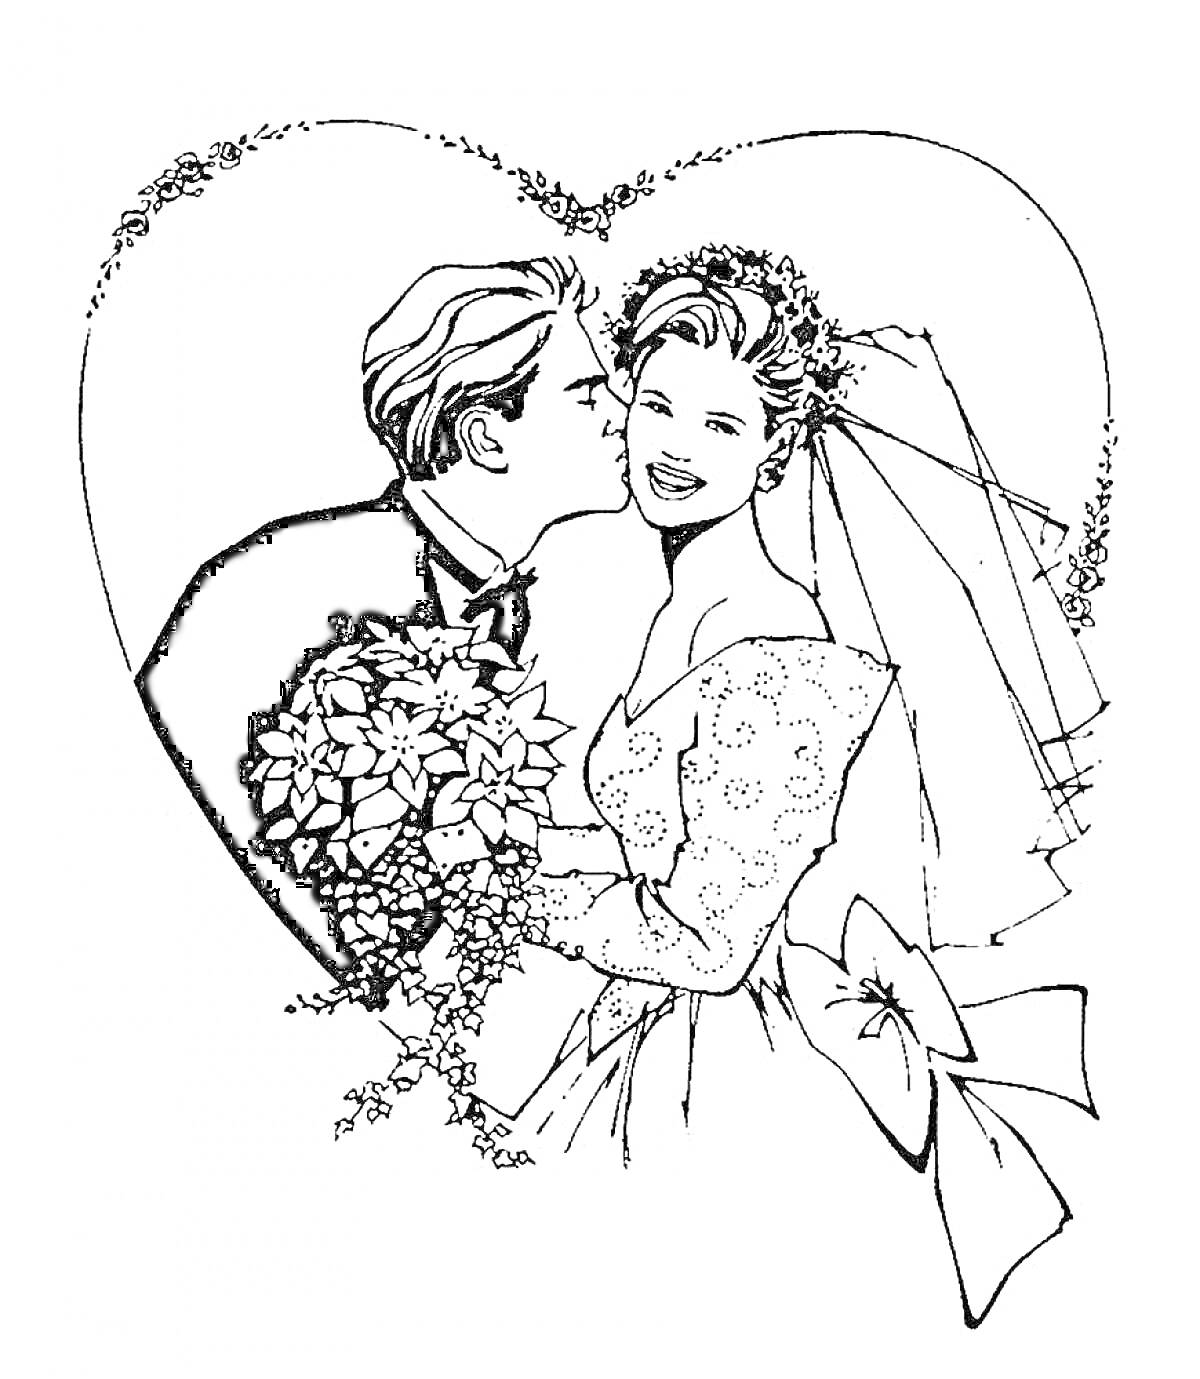 Жених целует невесту на фоне сердца, цветы, вуаль, банты